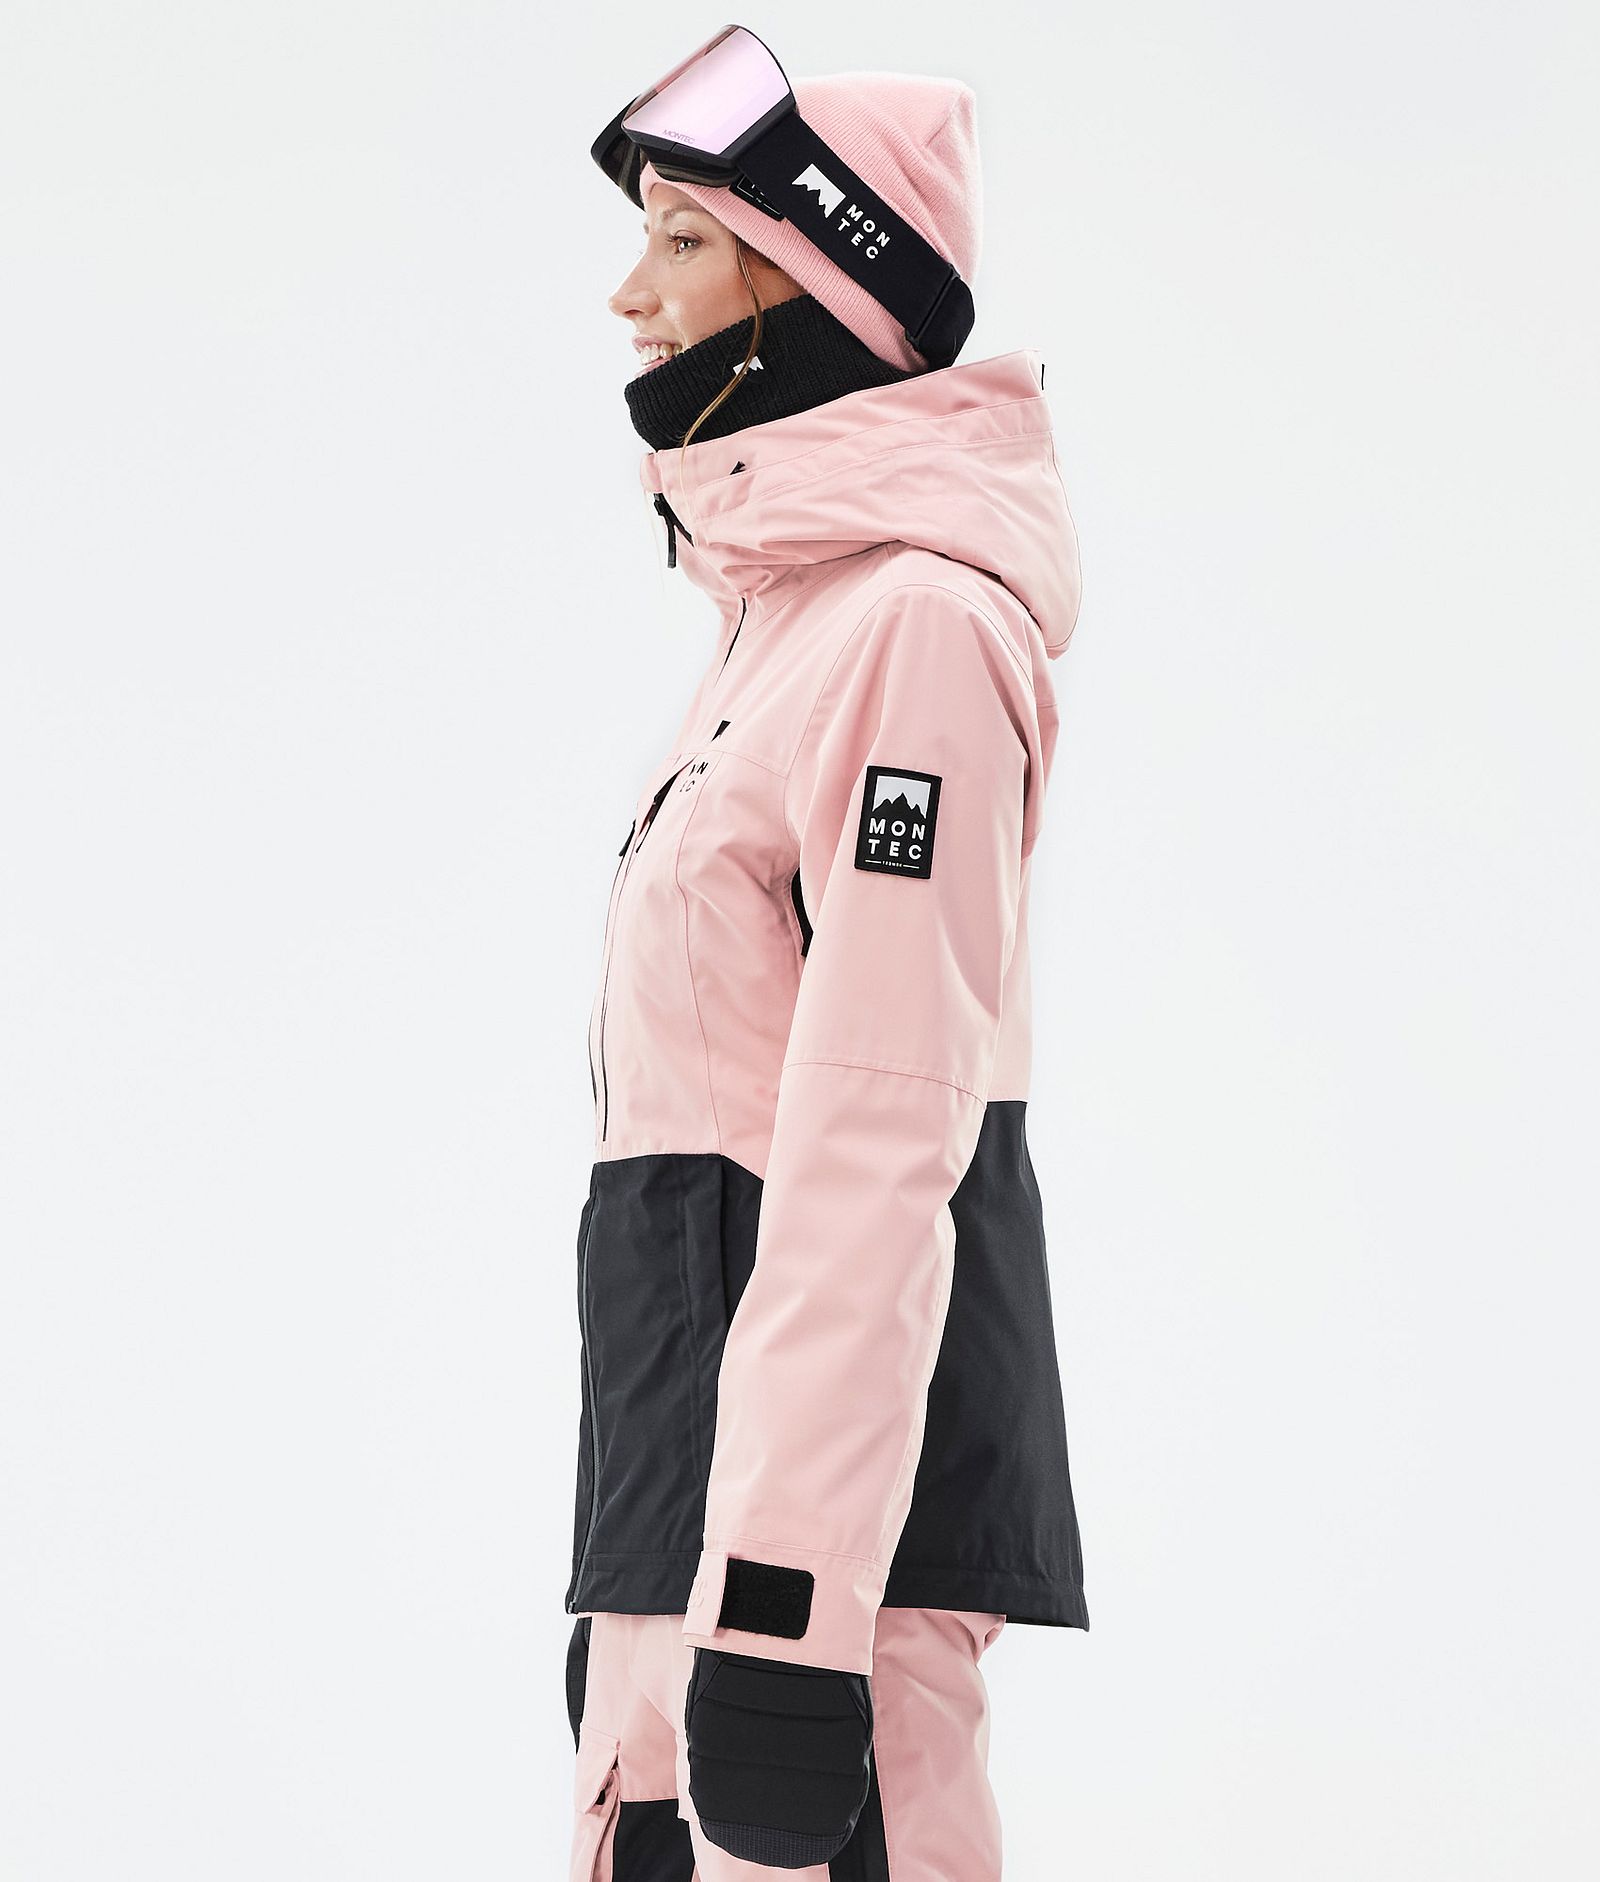 Moss W Kurtka Snowboardowa Kobiety Soft Pink/Black